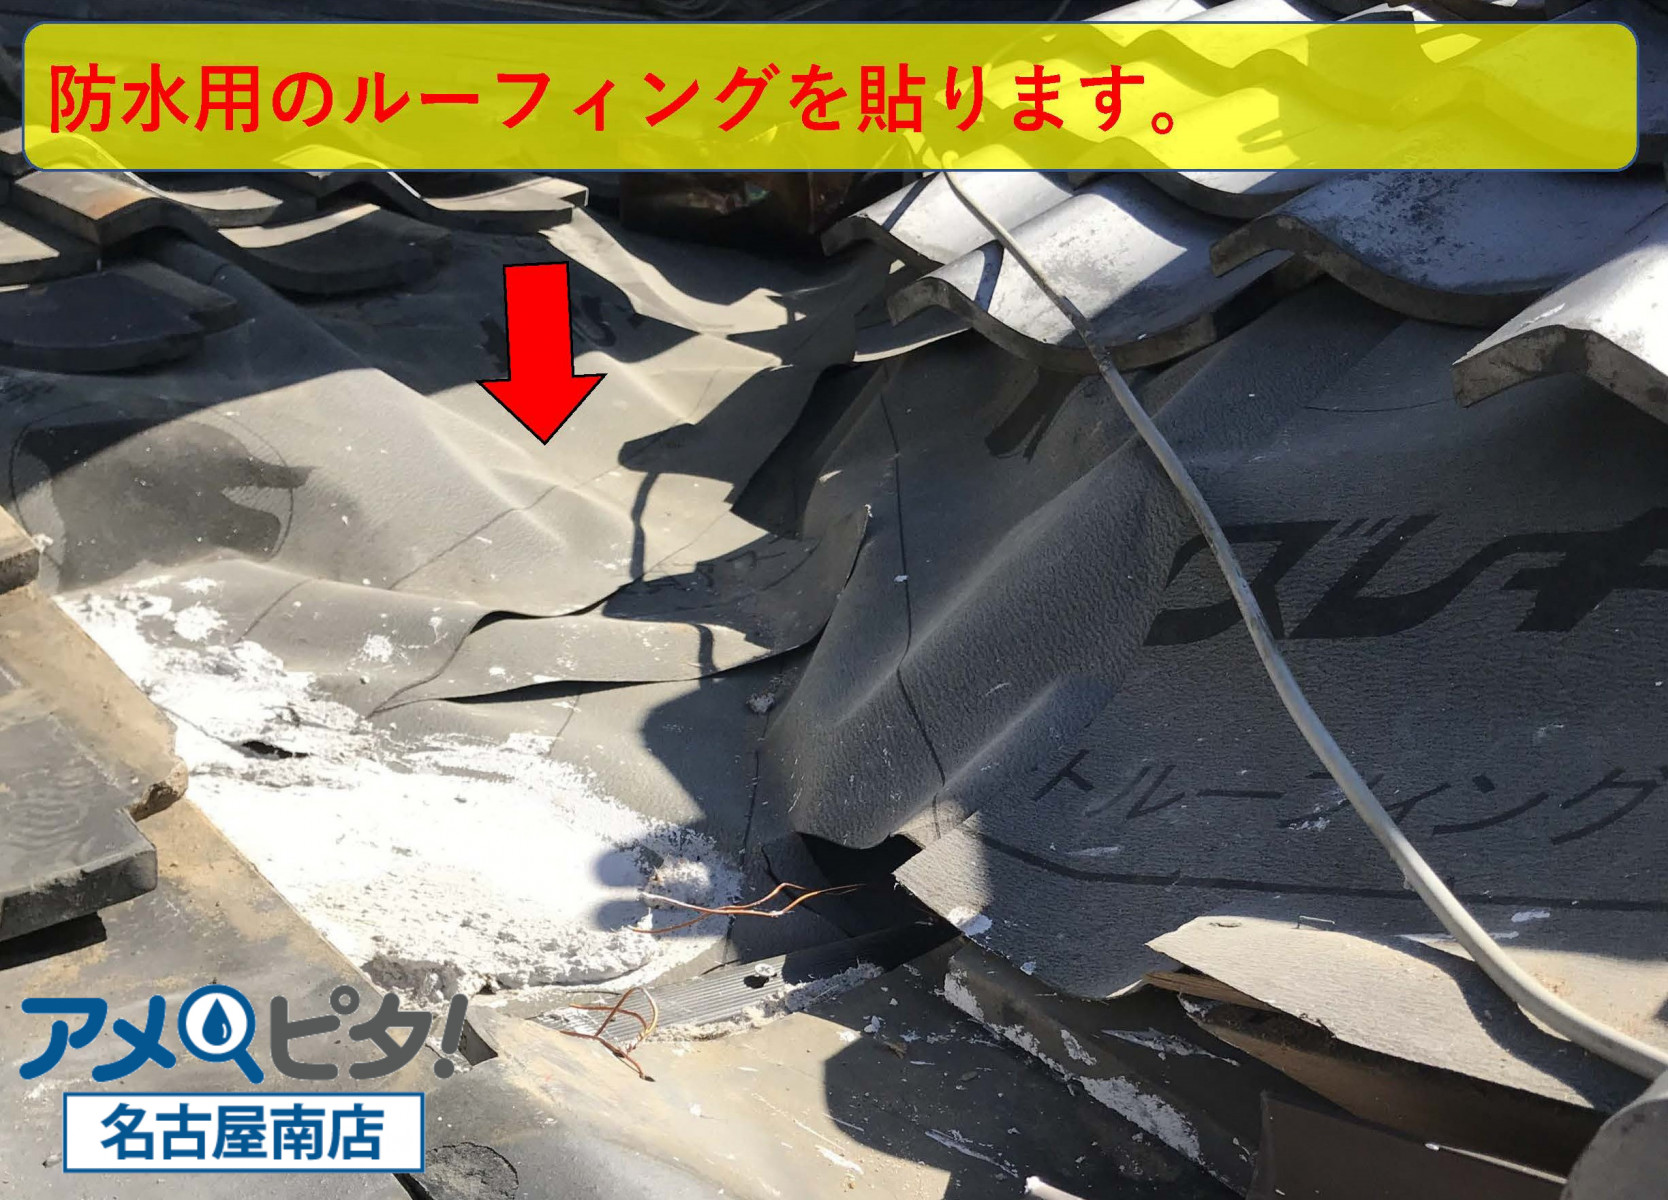 知多市にて雨漏りの原因となっている谷樋鉄板などの取り替え交換作業